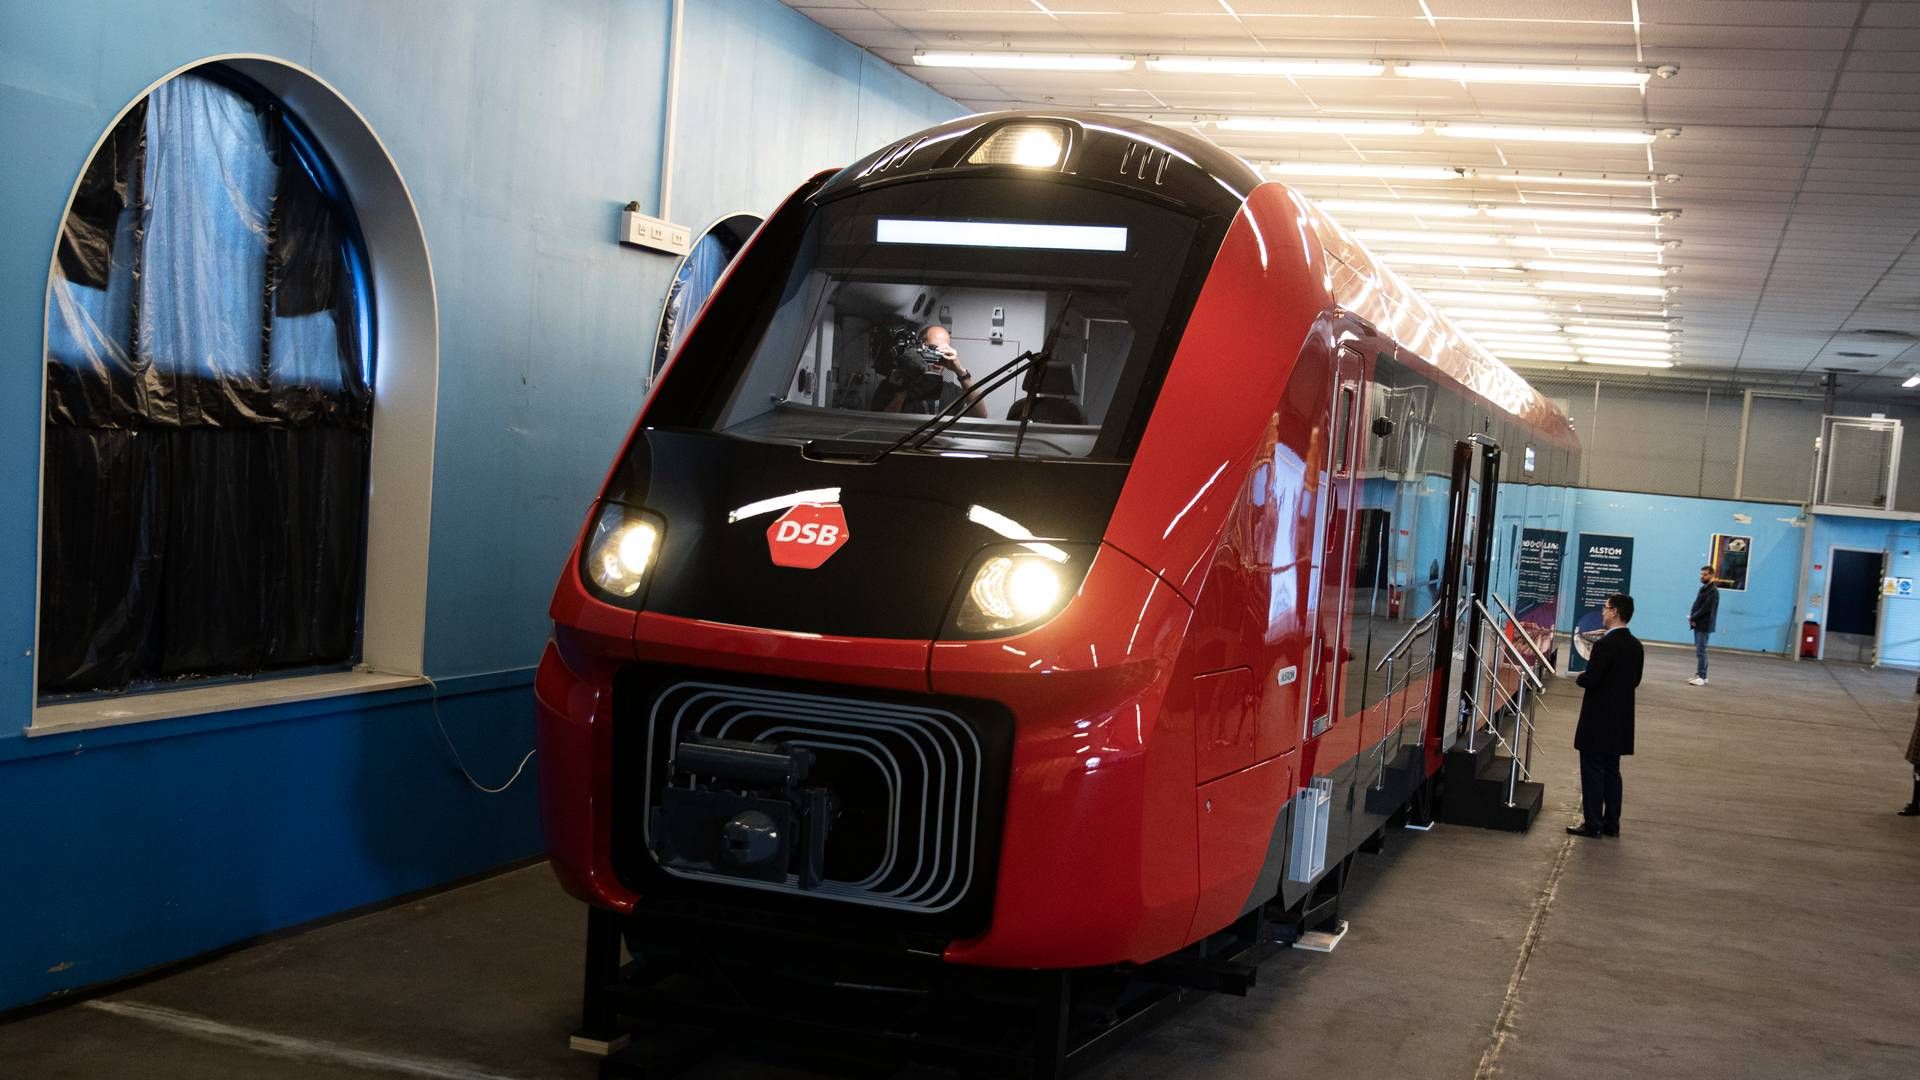 DSB og producenten Alstom har forleden præsenteret fremtidens tog i Danmark - IC5. | Foto: Sofia Busk